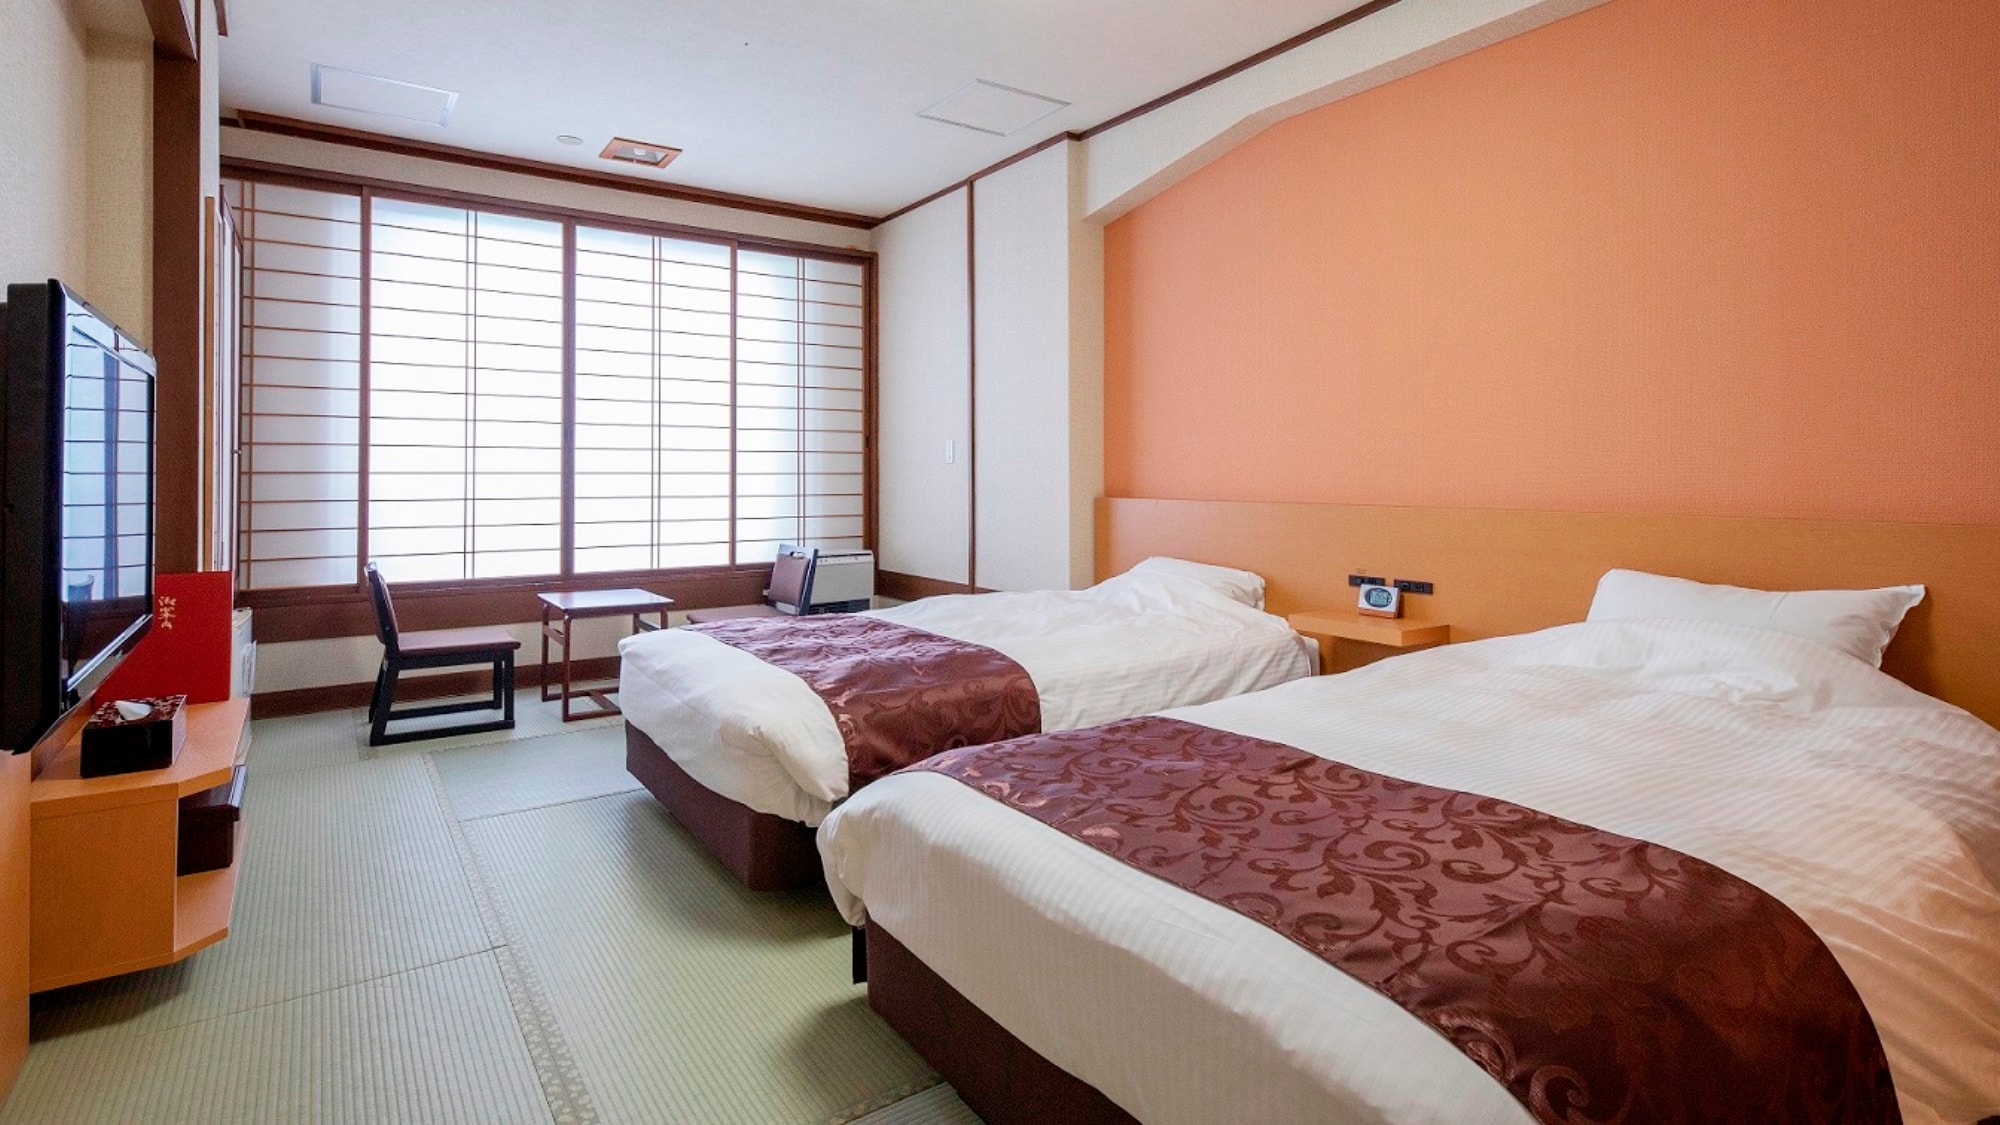 ต่ออายุกรกฎาคม 2019 ♪ [อาคารตะวันตก (ปลอดบุหรี่)] ห้องทวินสไตล์ญี่ปุ่น (พร้อมโถสุขภัณฑ์และห้องอาบน้ำ)